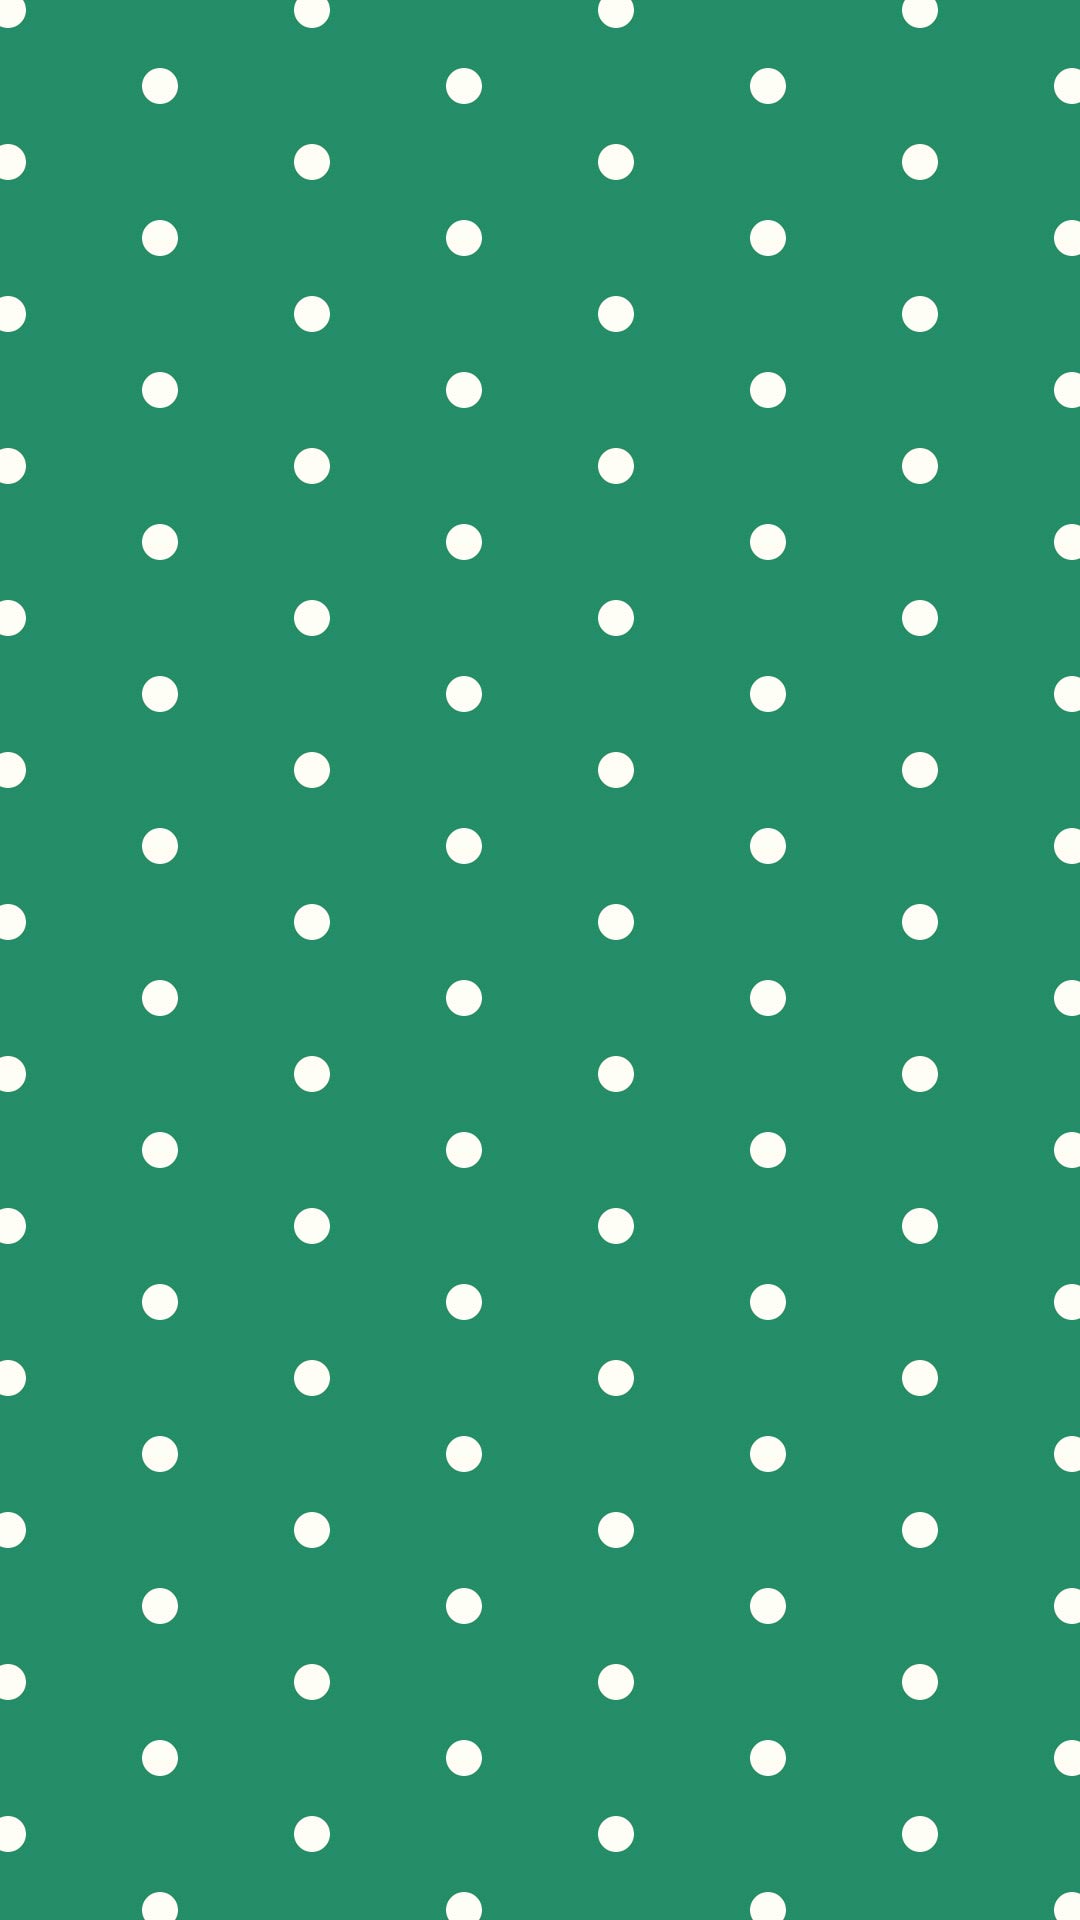 緑色の背景にシンプルなクリーム色のドットのパターン